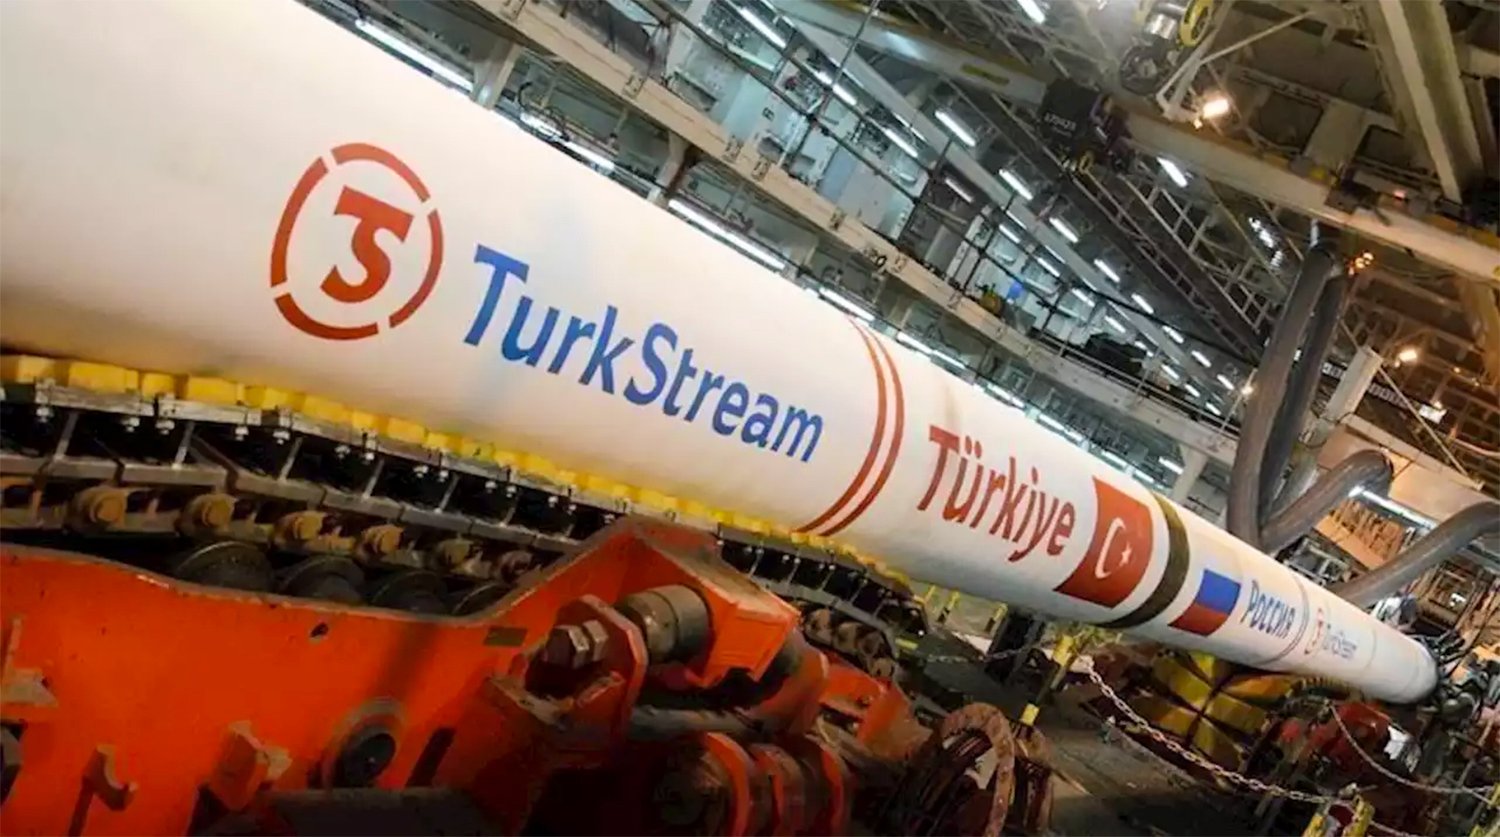 Սերբիան և Հունգարիան «Թուրքական հոսքի» շարունակությամբ ավարտել են նոր գազատարի կառուցումը